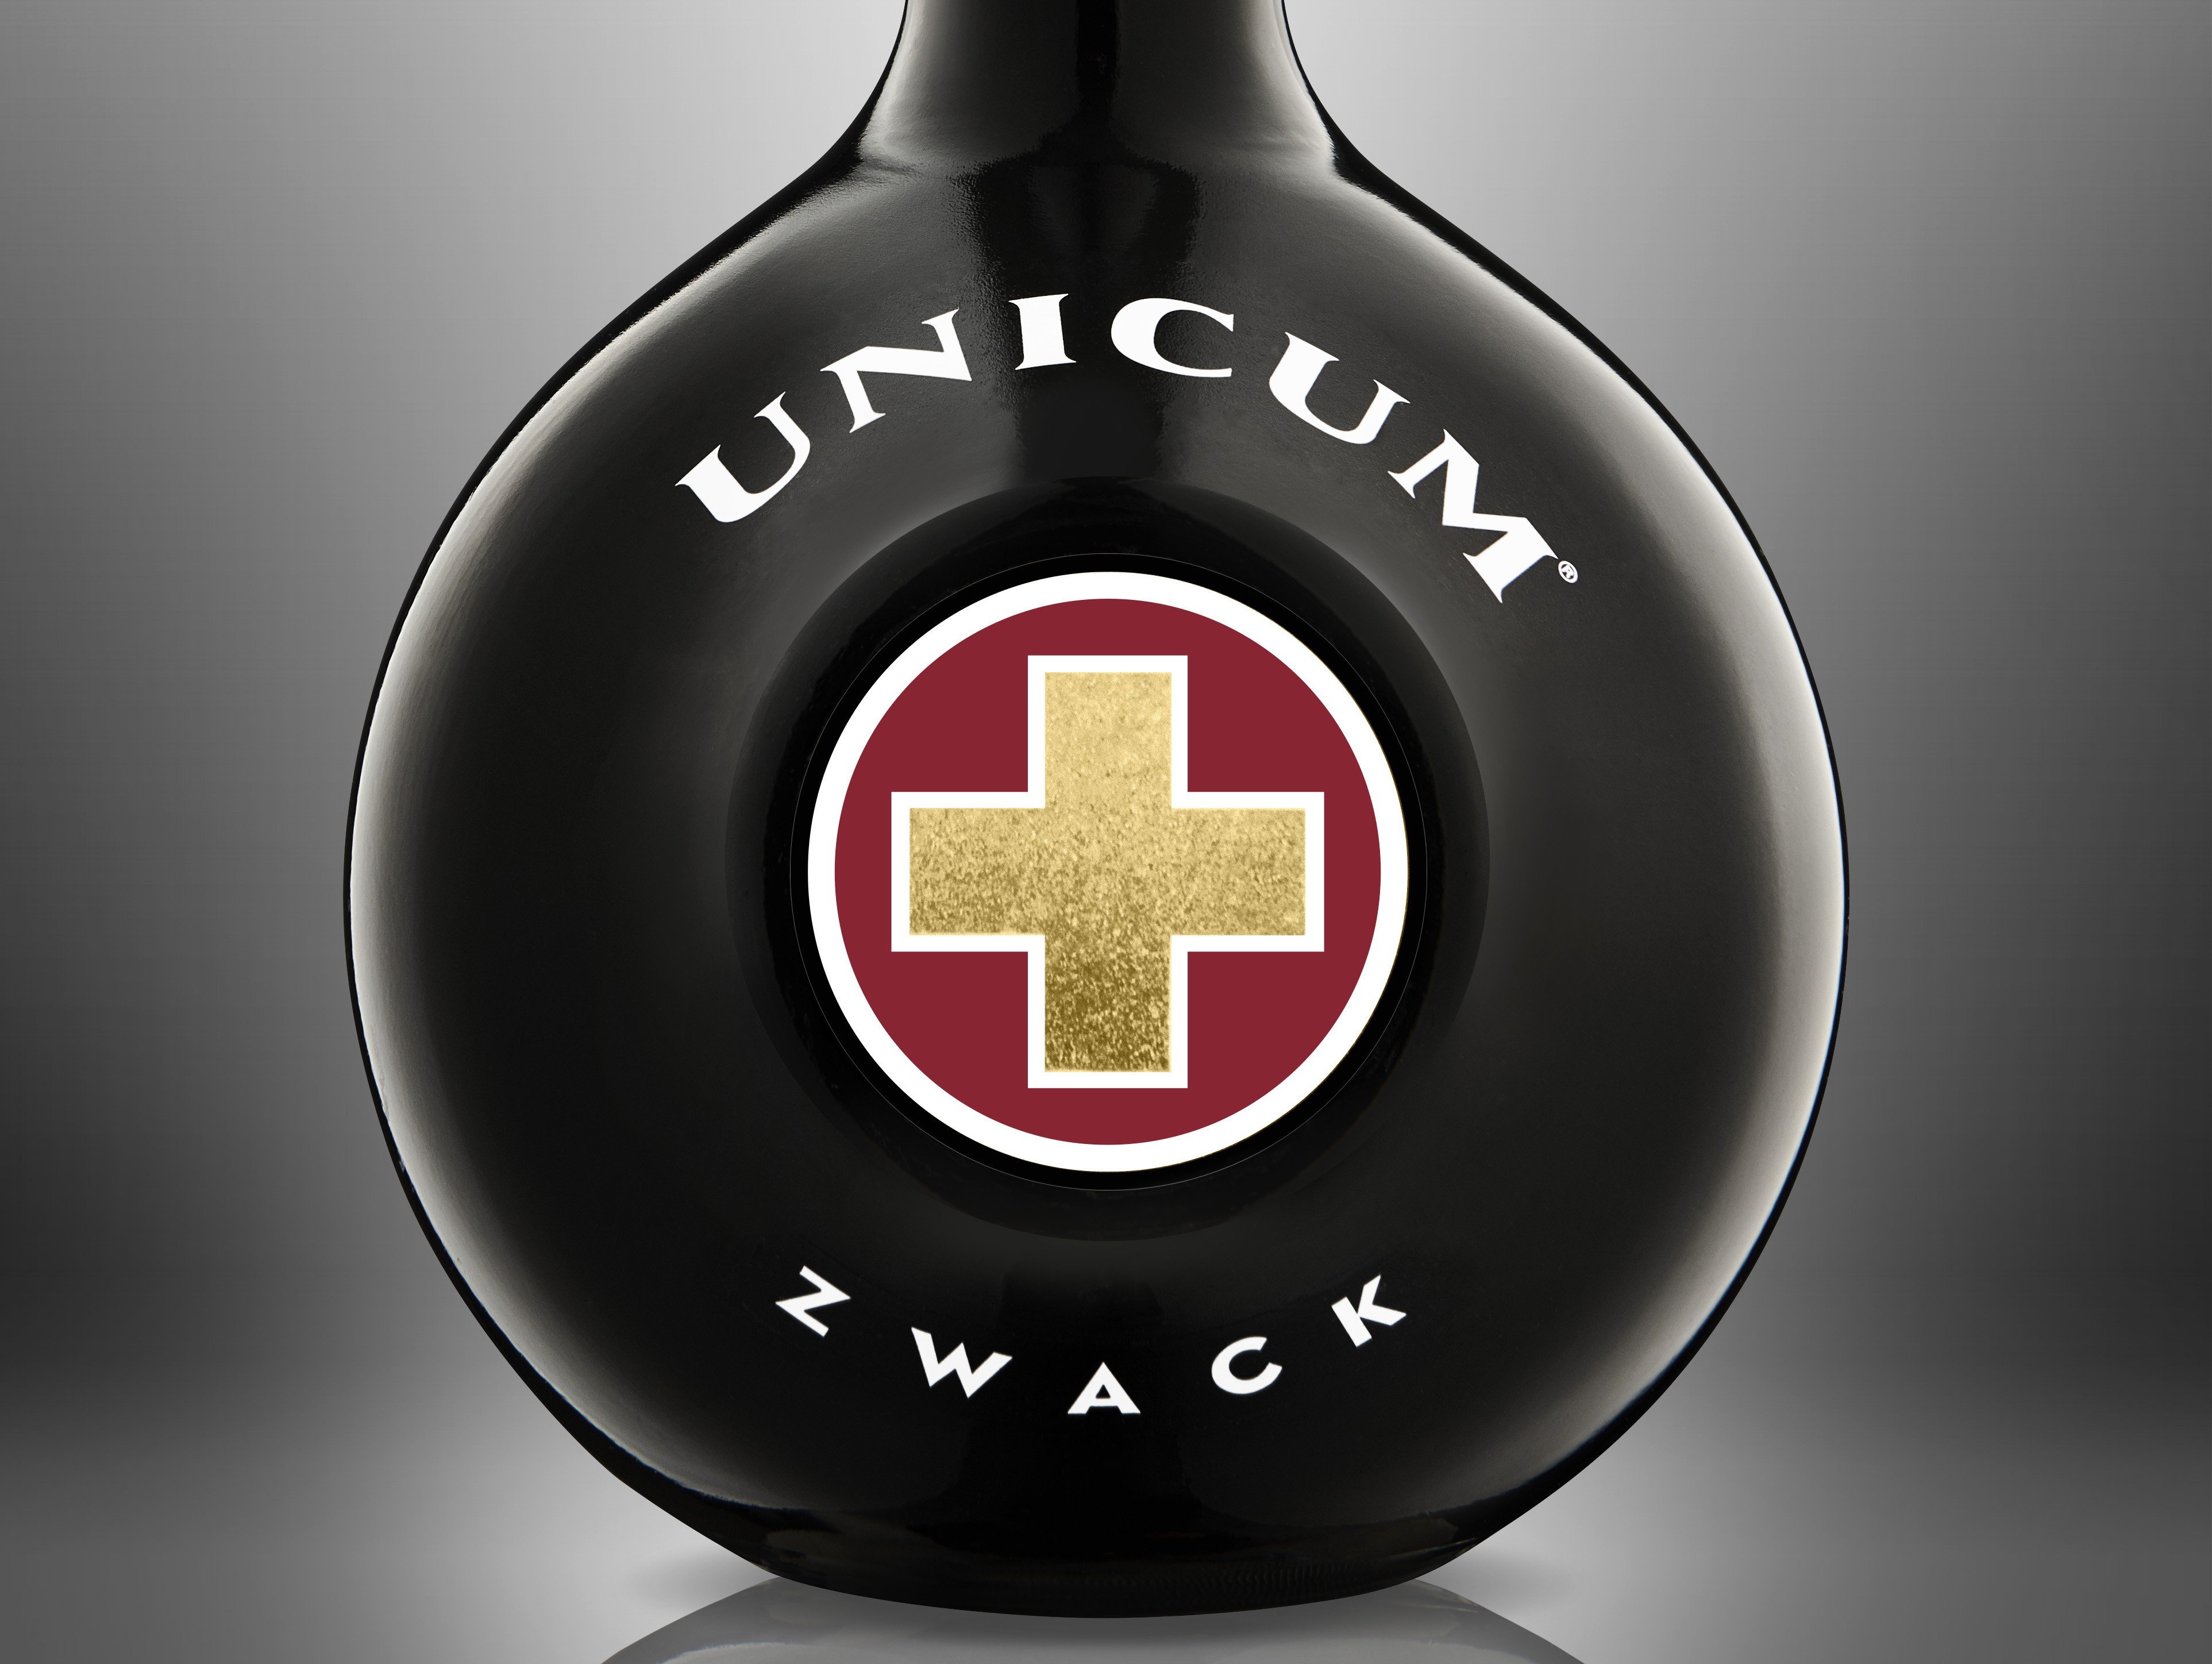 Legendás elemekkel újult meg az Unicum